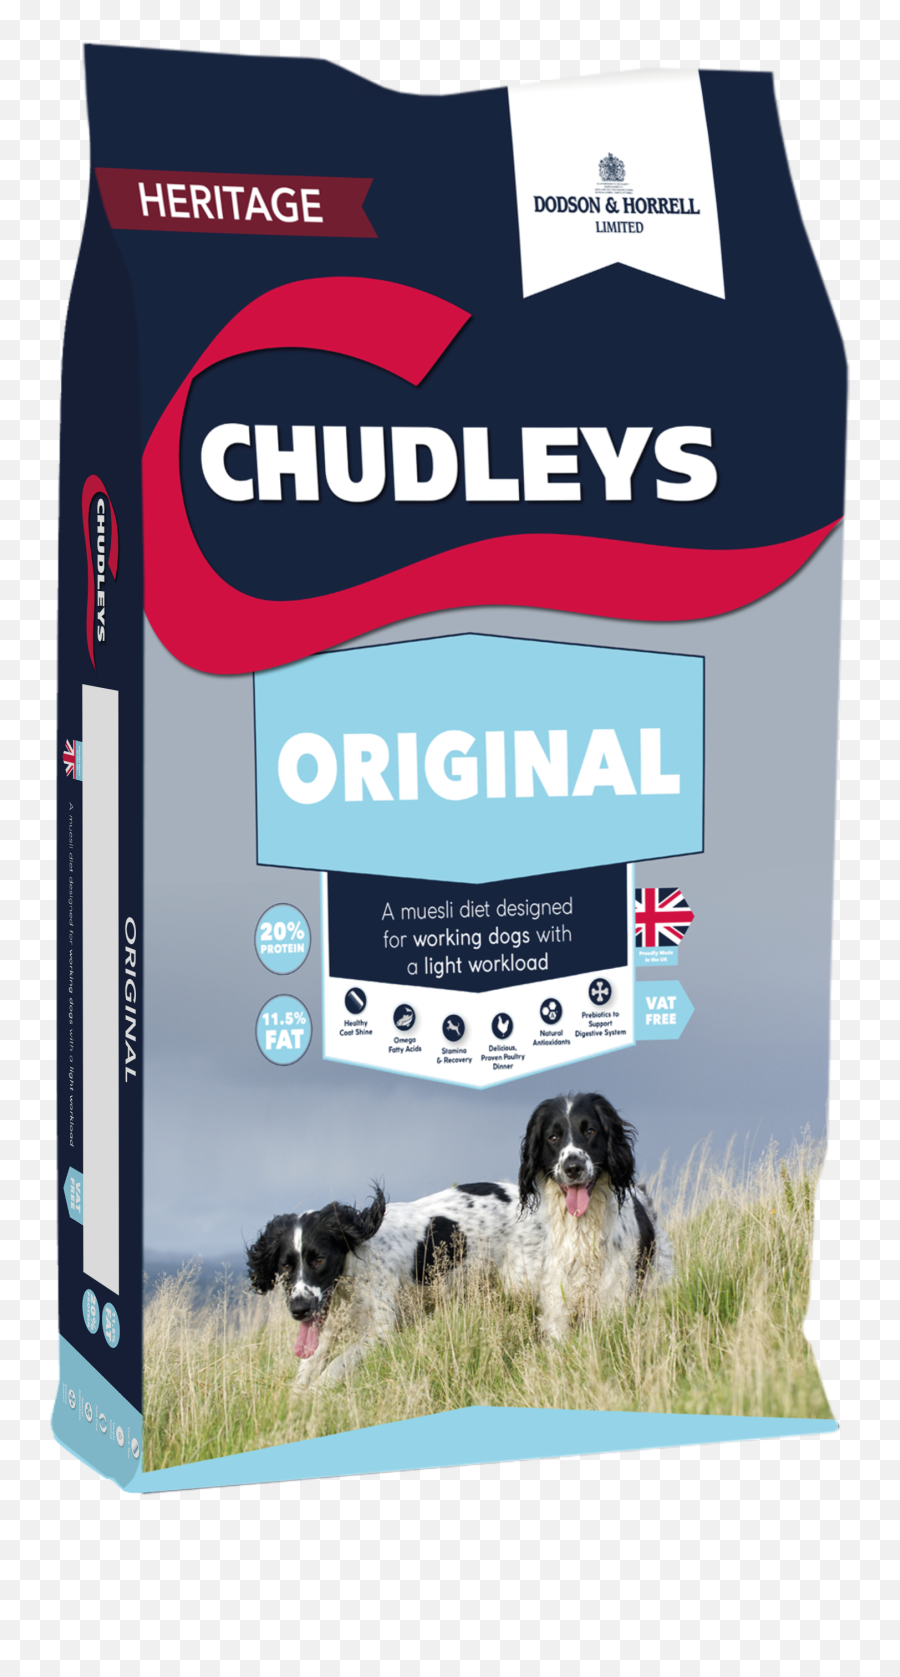 Products Chudleys - Chudleys Sensitive Dog Food Png,Dog Filter Png